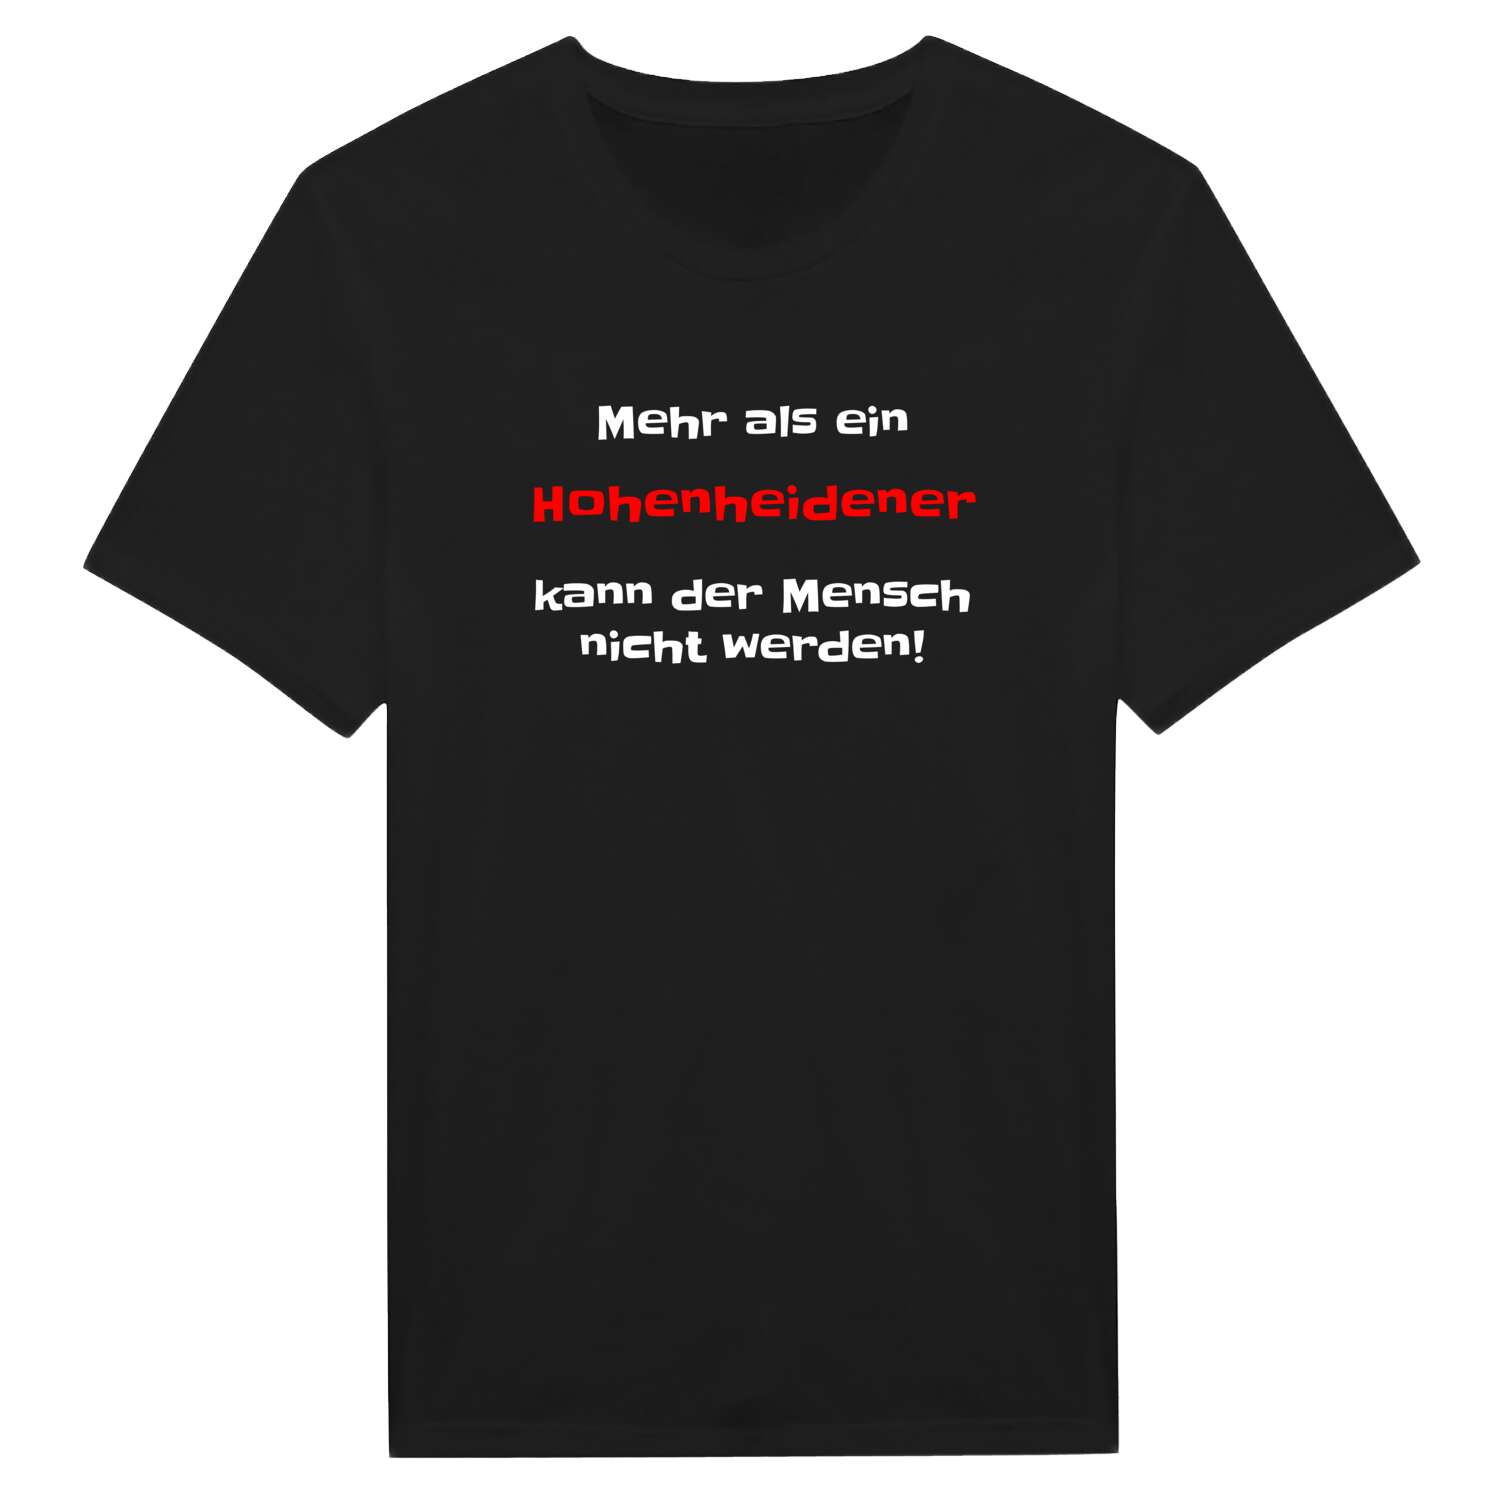 Hohenheide T-Shirt »Mehr als ein«